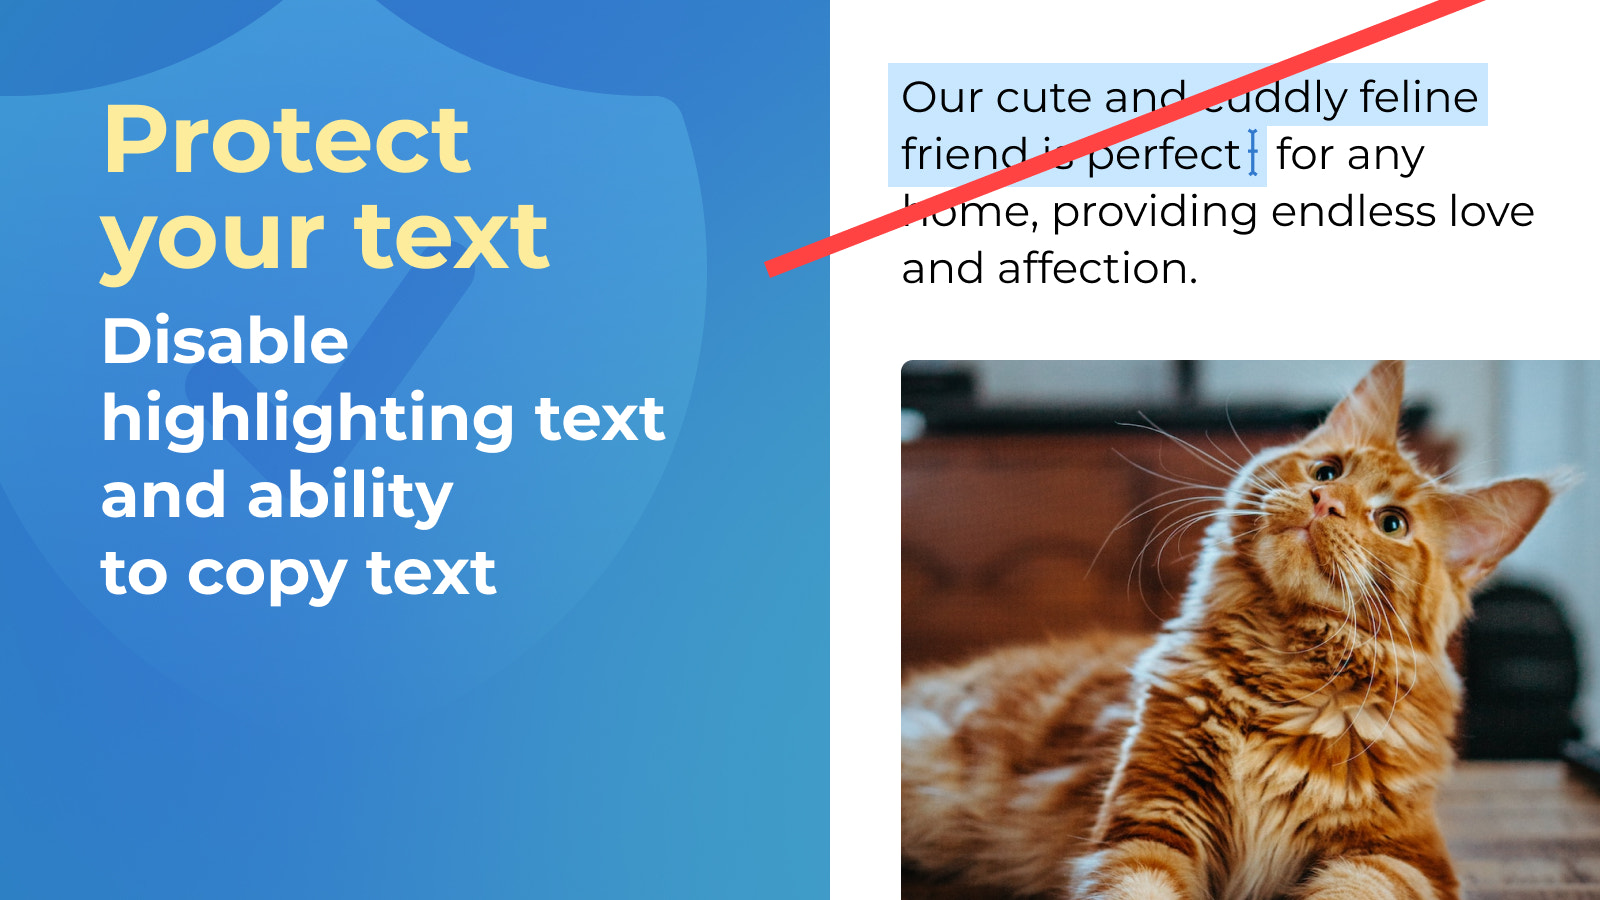 Skydda din text: Inaktivera textmarkering och möjligheten att kopiera